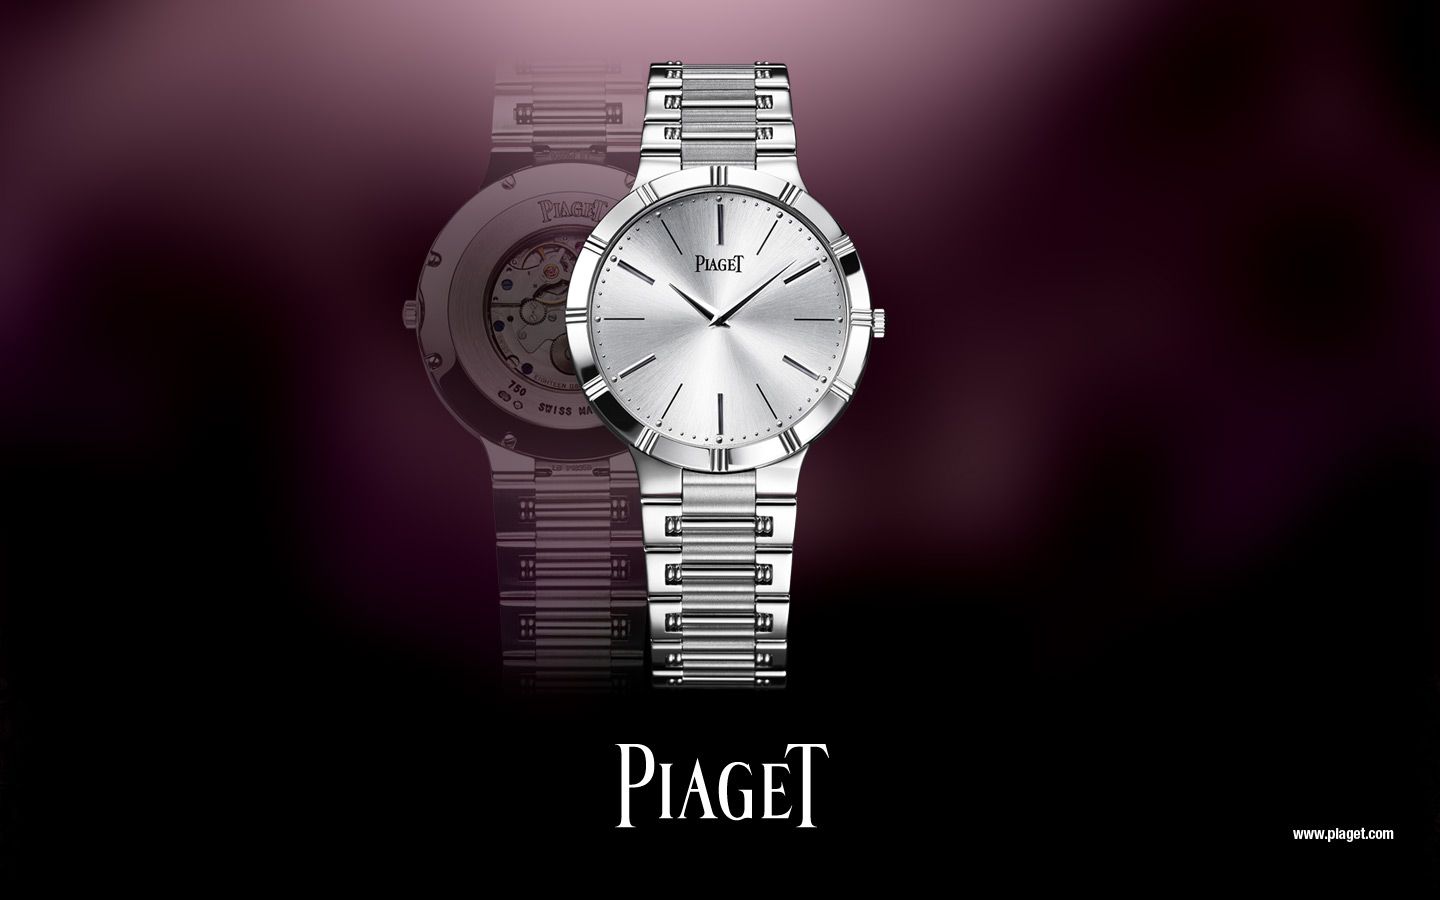 Piaget Dancer Women's Watch White Gold < Brands < Miscellaneous < Desktop Wallpaper